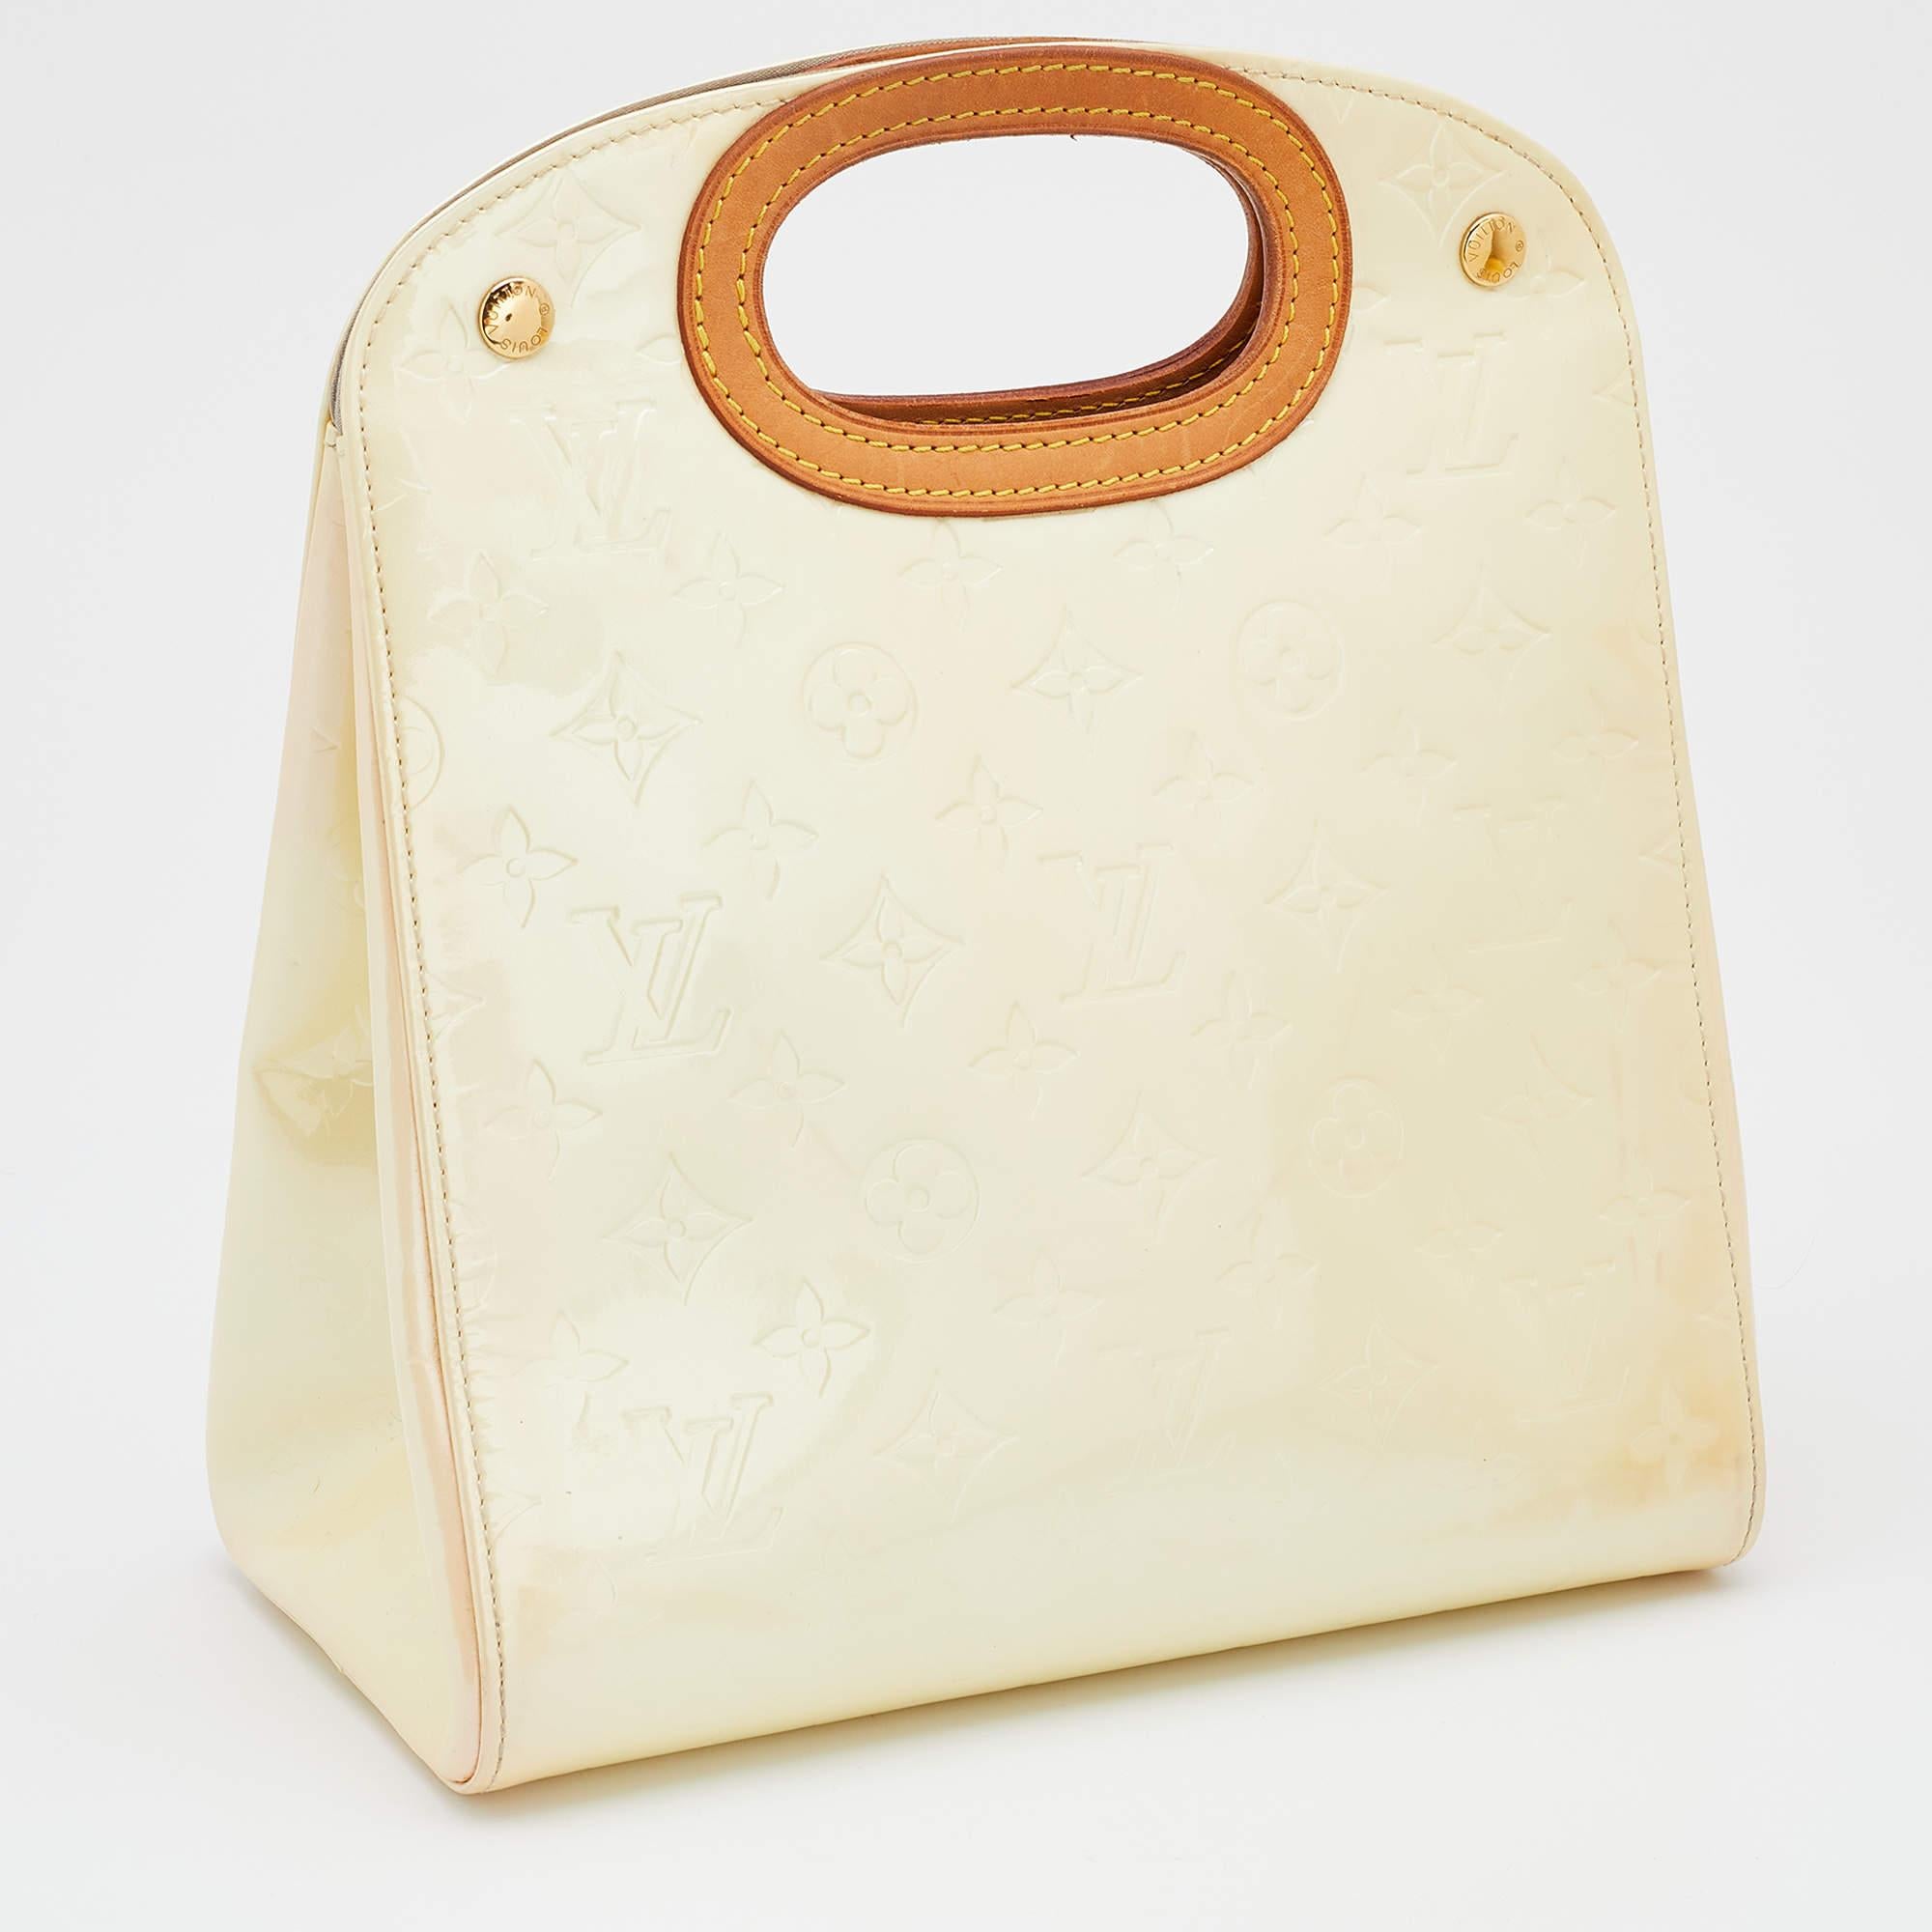 Women's Louis Vuitton Perle Monogram Vernis Maple Drive Bag